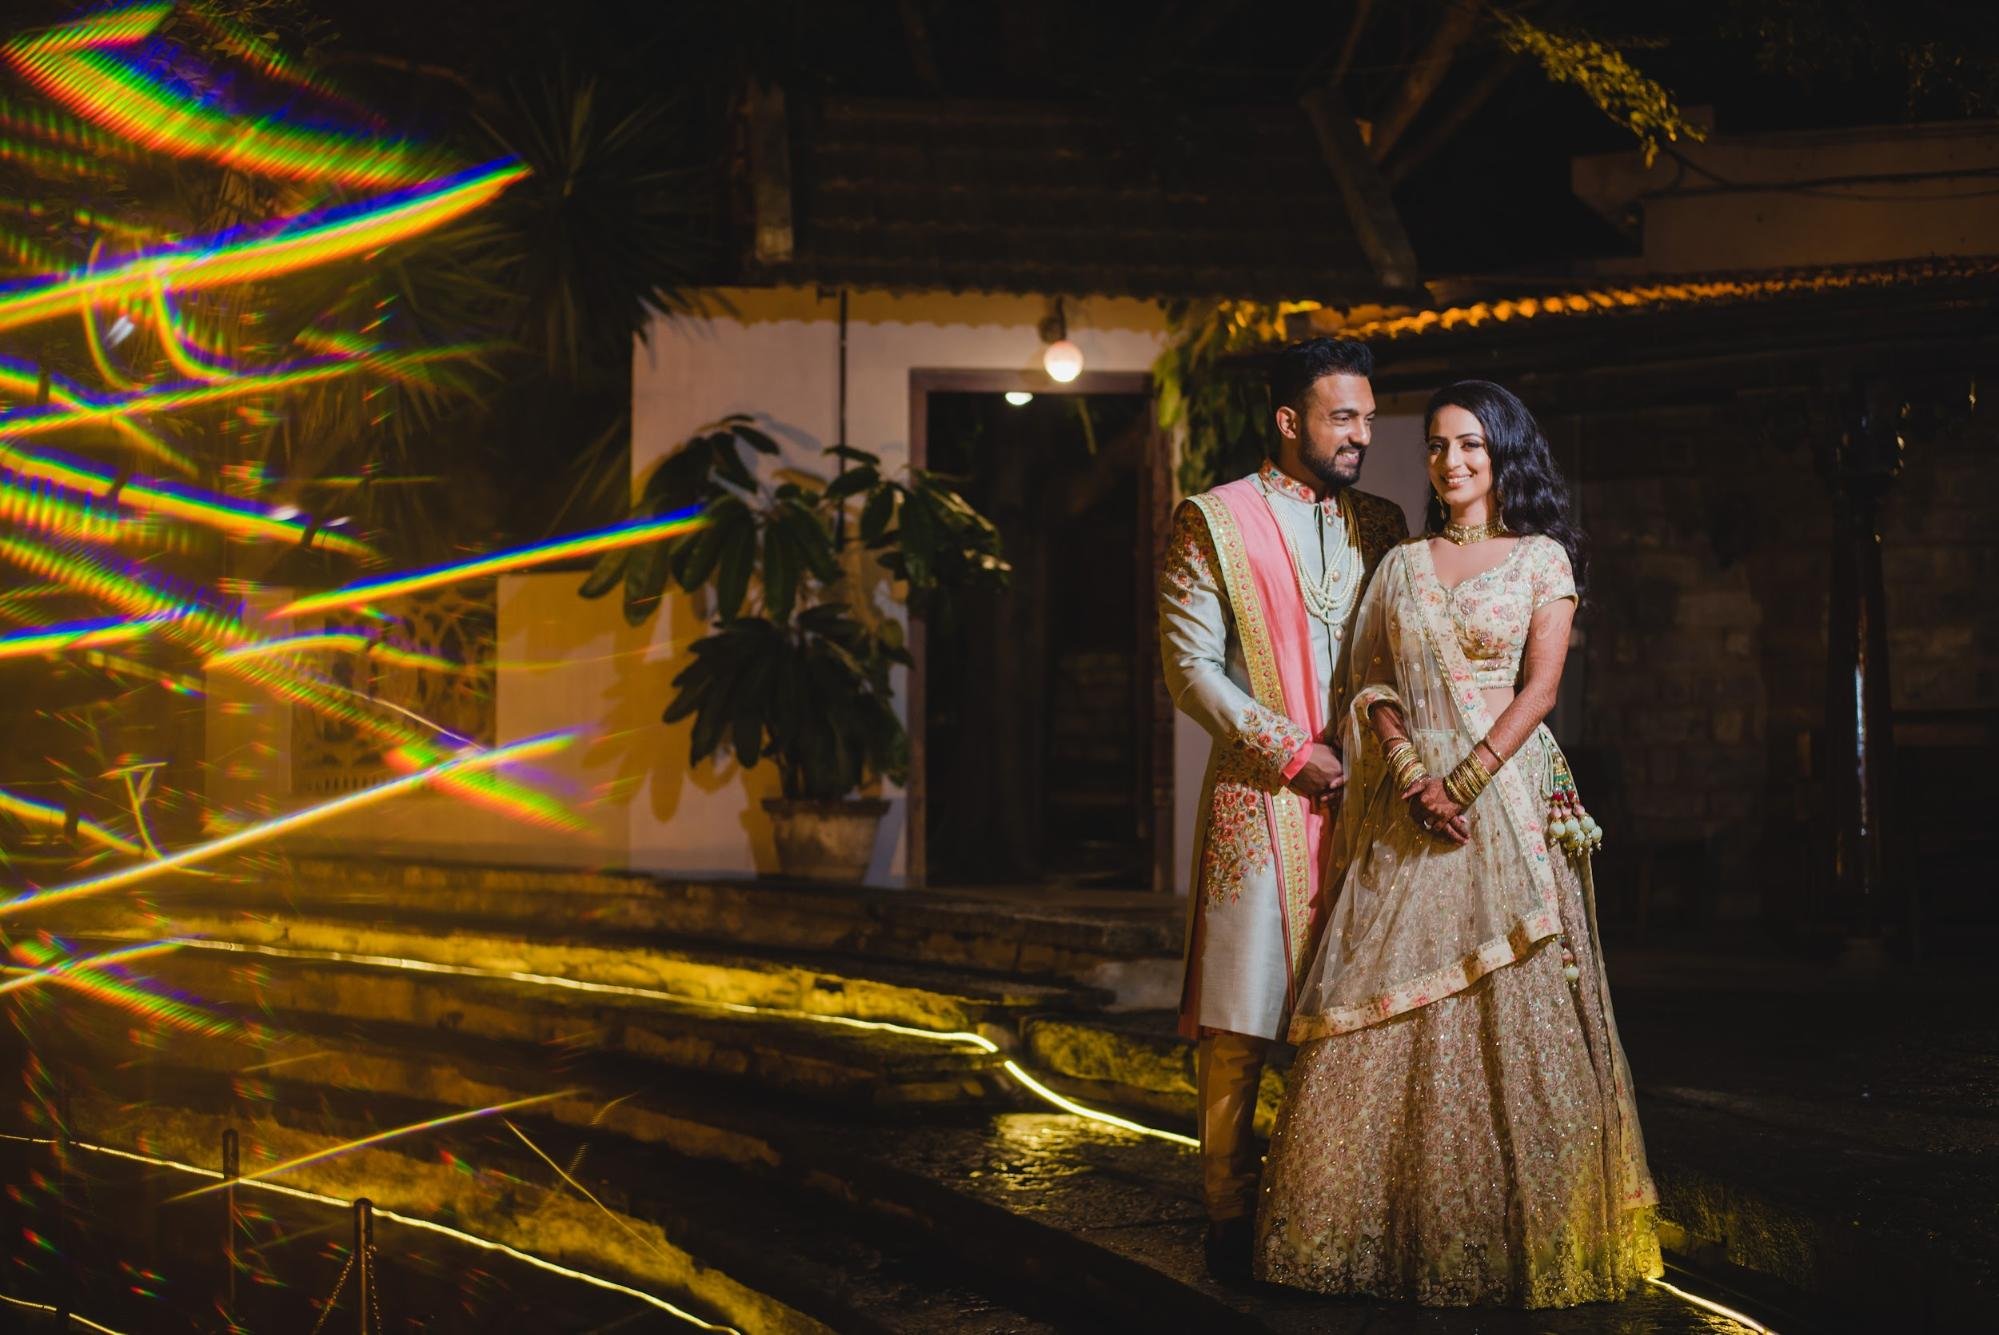 Golden Color Combination Party Wear Dresses | Pakistani bridal dresses,  Bridal dresses pakistan, Indian bridal dress